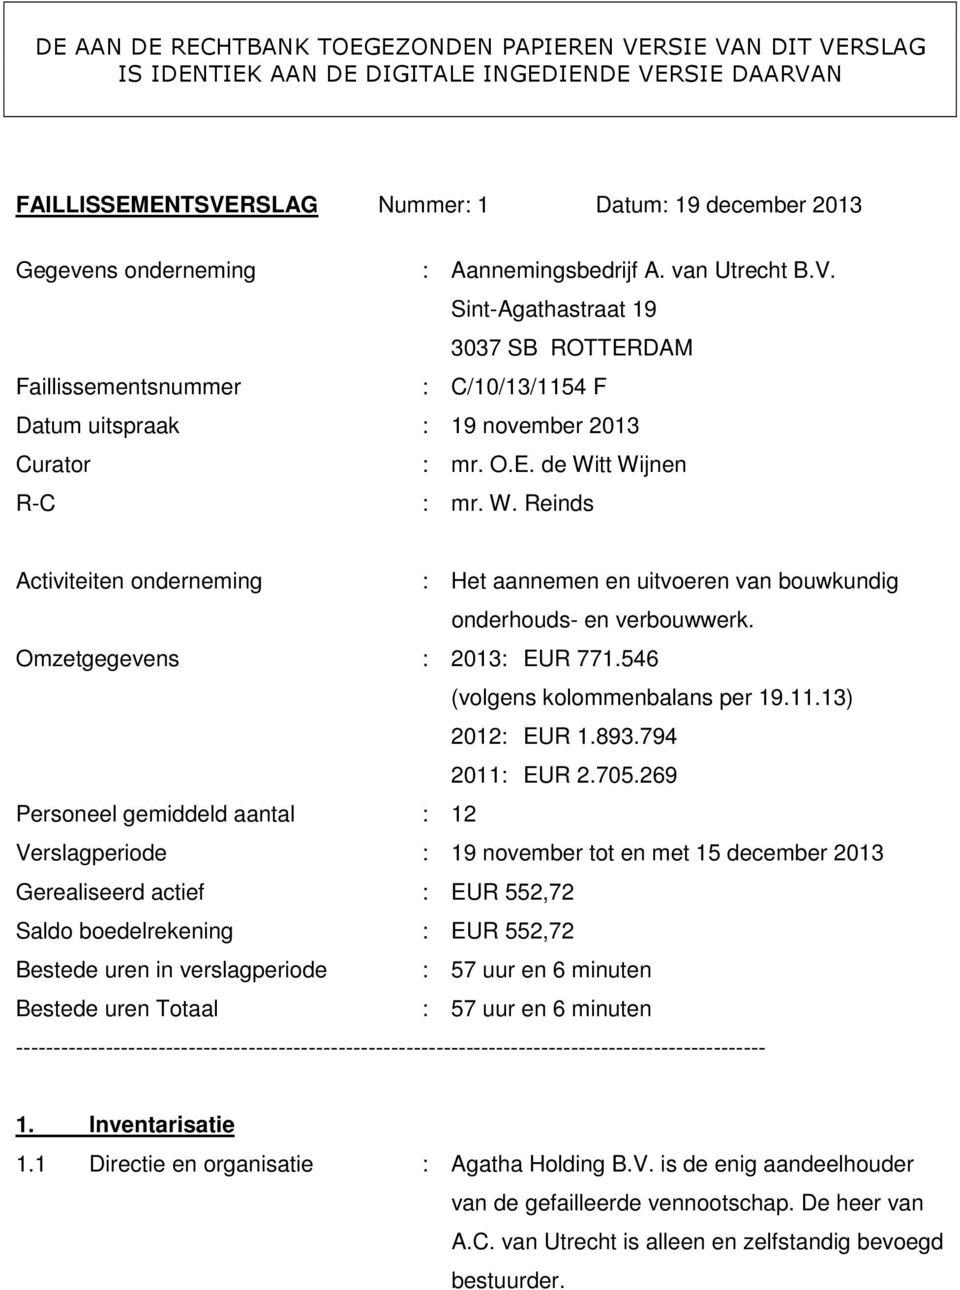 tt Wijnen R-C : mr. W. Reinds Activiteiten onderneming : Het aannemen en uitvoeren van bouwkundig onderhouds- en verbouwwerk. Omzetgegevens : 2013: EUR 771.546 (volgens kolommenbalans per 19.11.